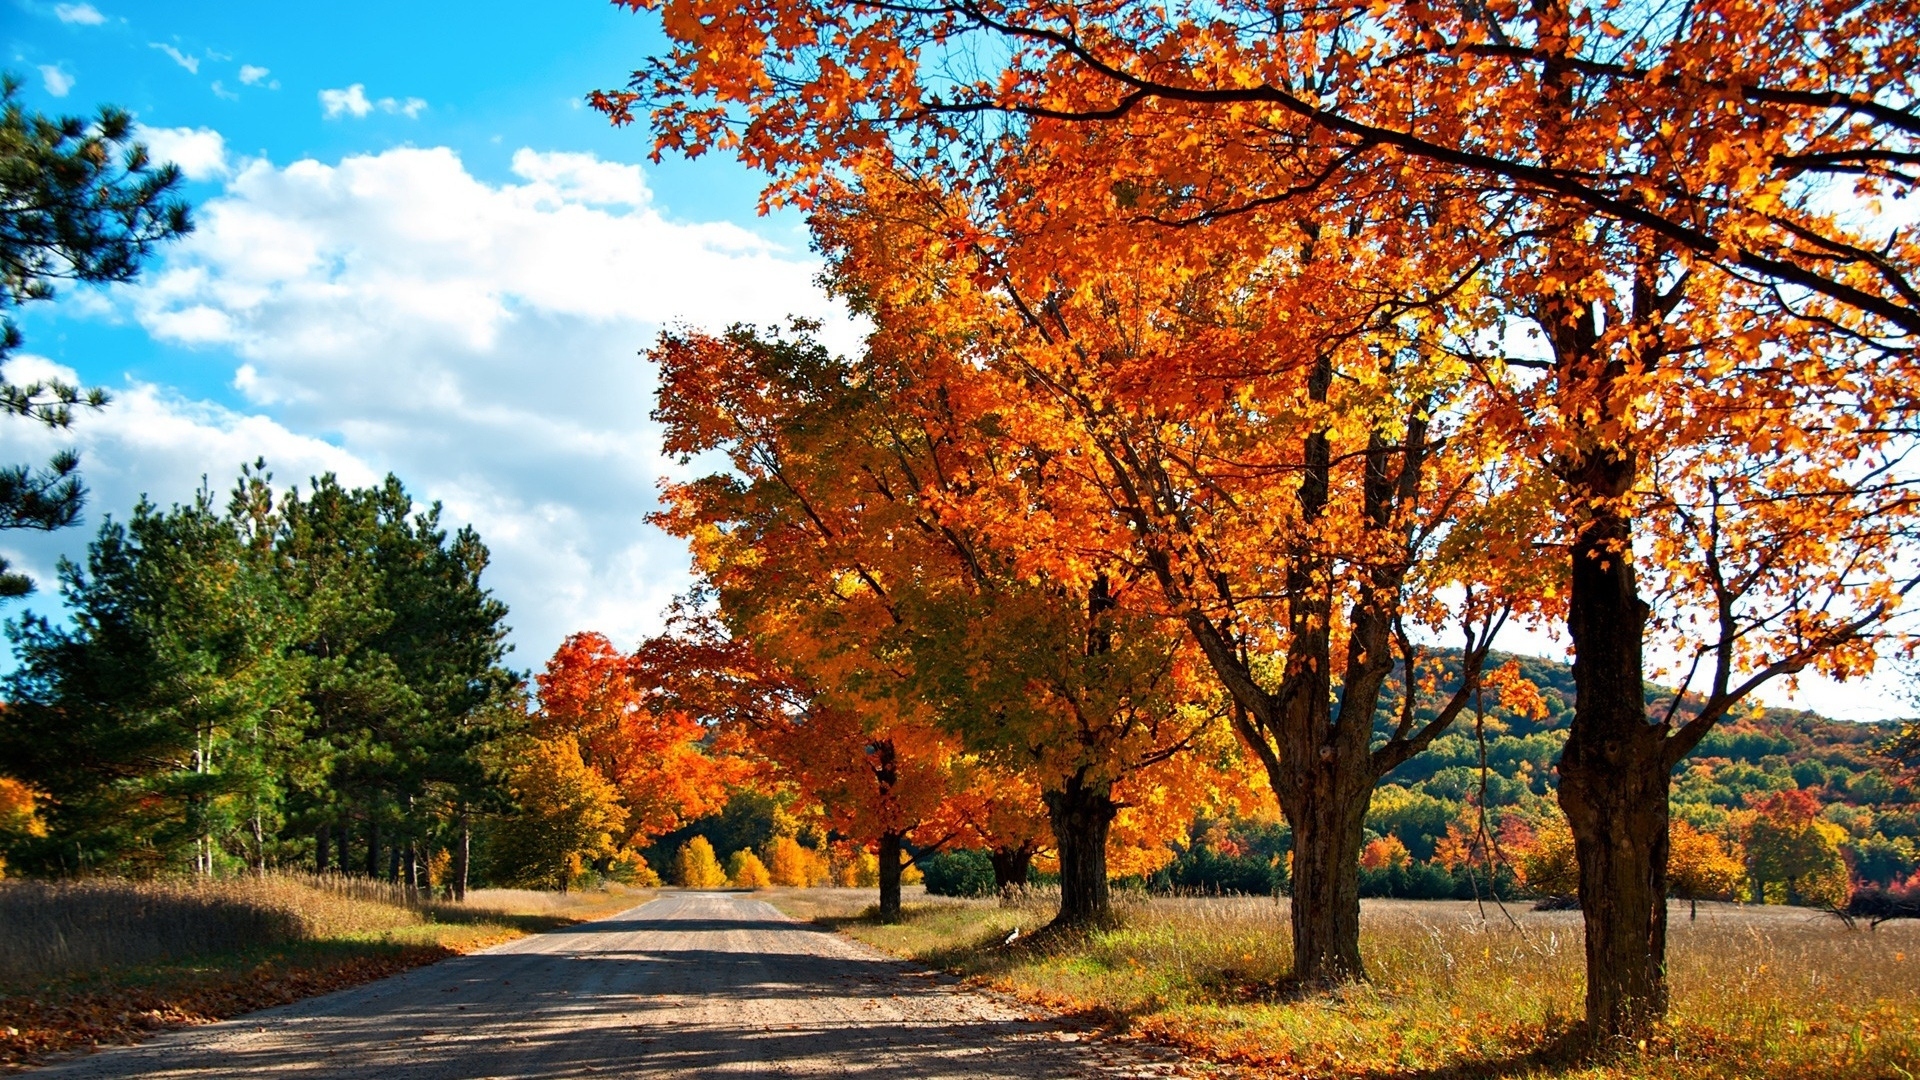 Скачать обои бесплатно Природа, Осень, Дерево, Дорожка, Ландшафт, Земля/природа картинка на рабочий стол ПК